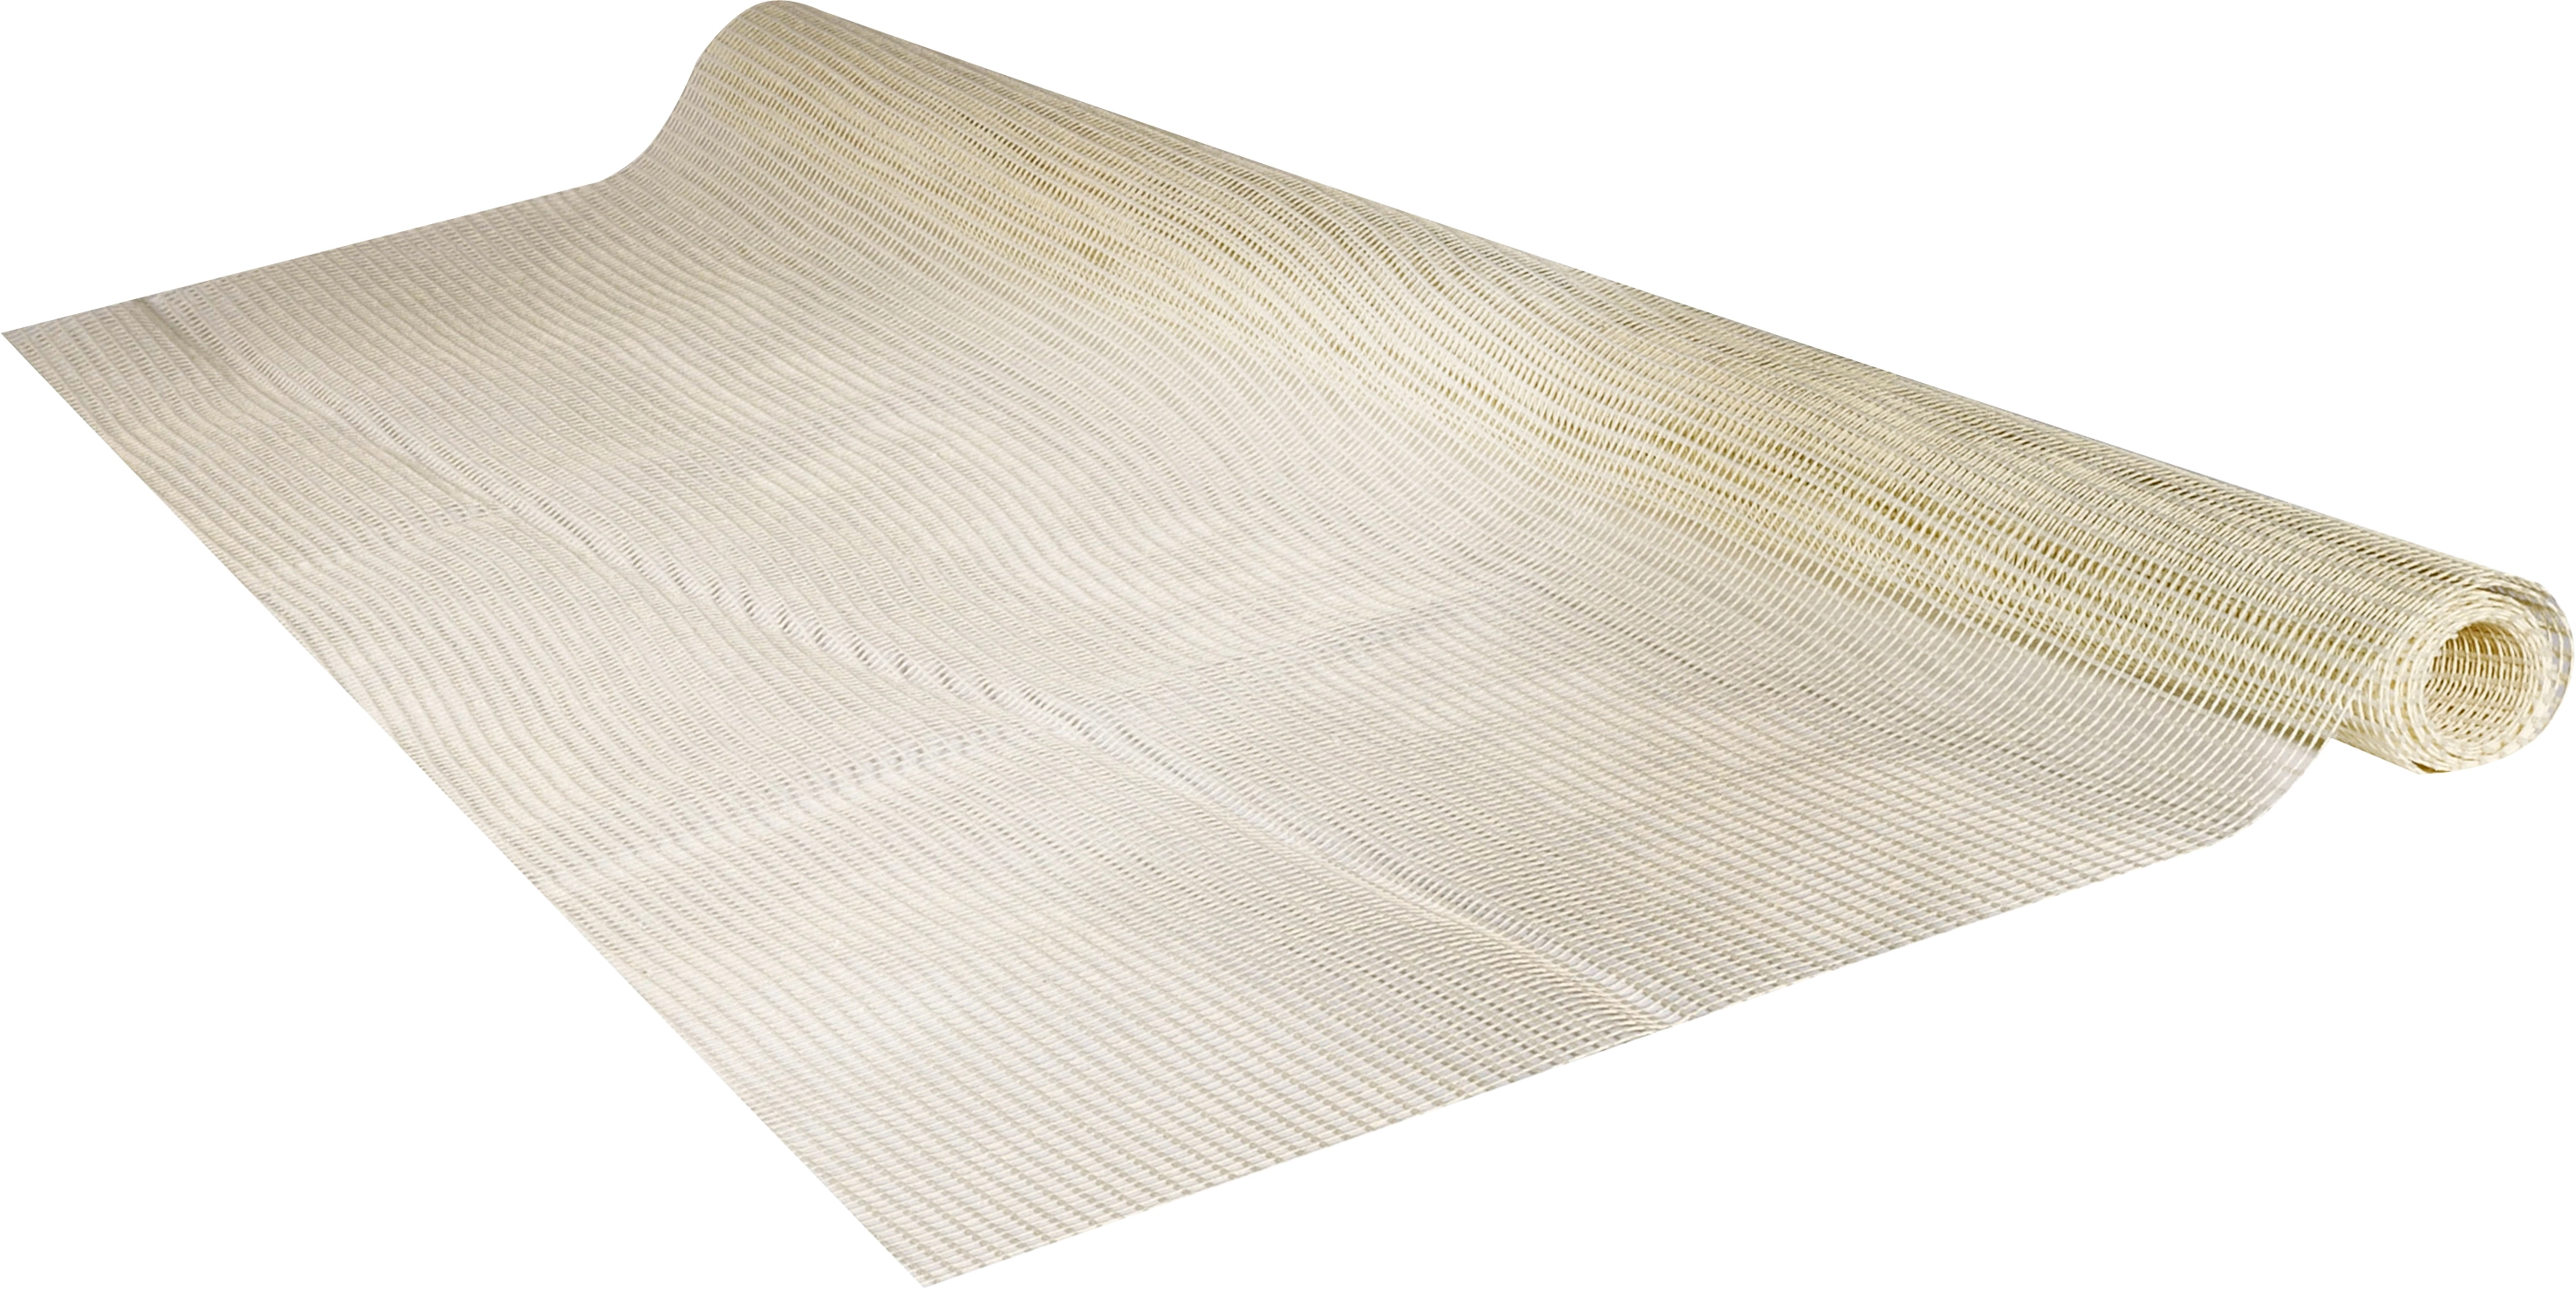 16 Stück Teppich Antirutschunterlage, Teppichstopper Antirutschpads Dreieck  Rutschmatte Doppelseitig Wiederverwendbarer für Hartholzböden Teppiche